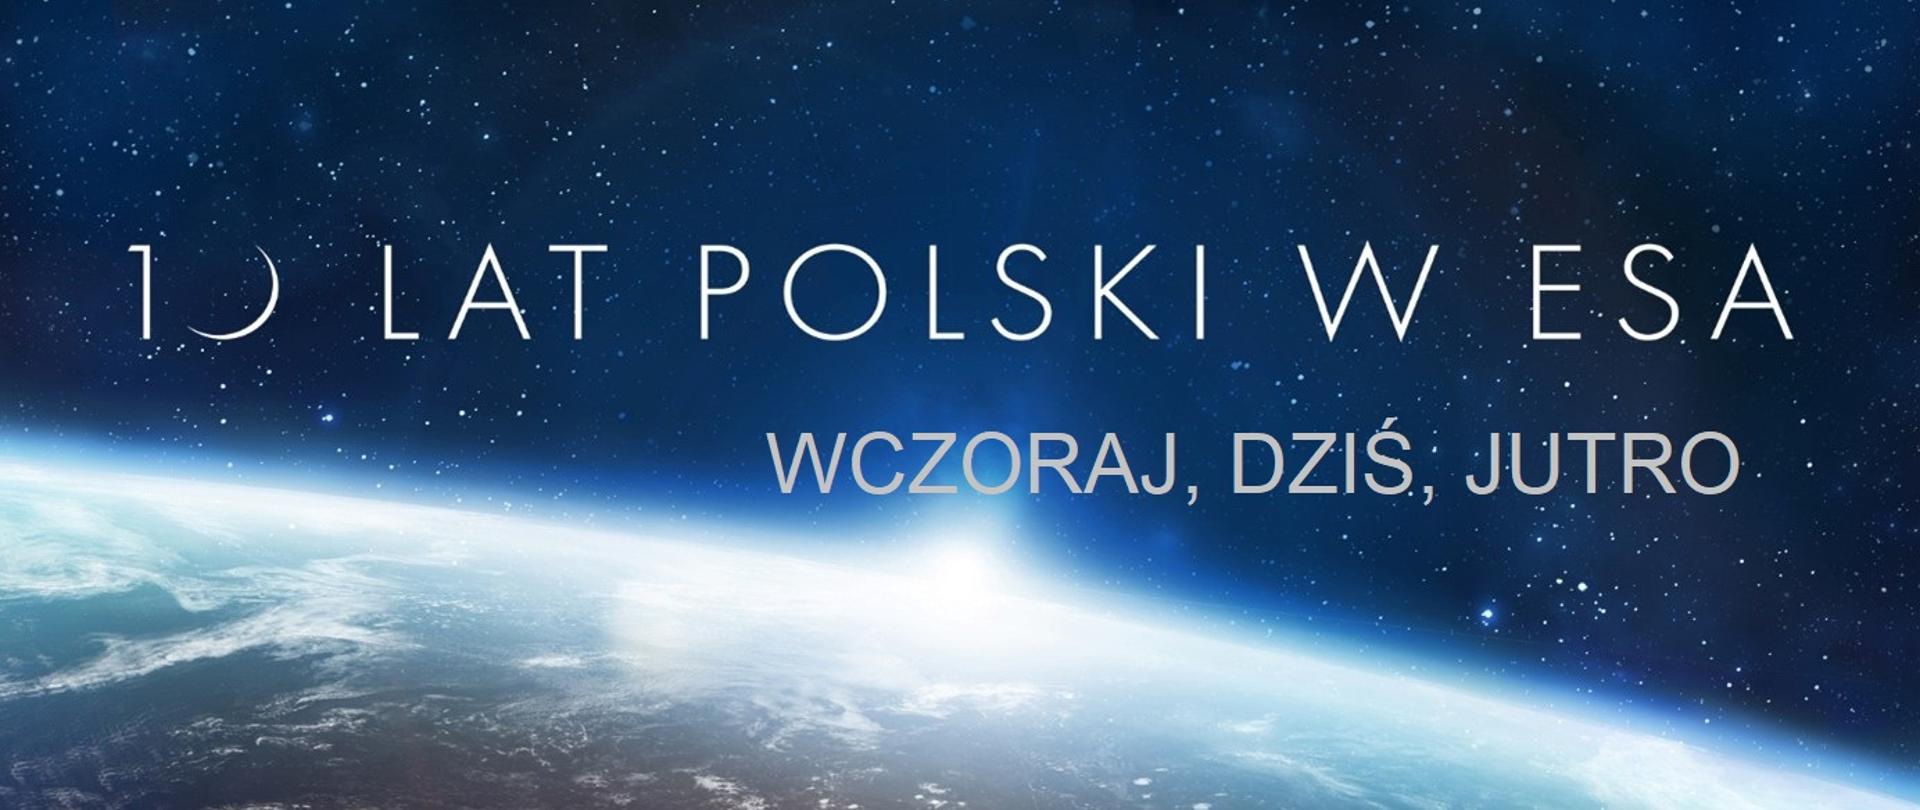 10 lat Polski w ESA. Wczoraj, dziś, jutro